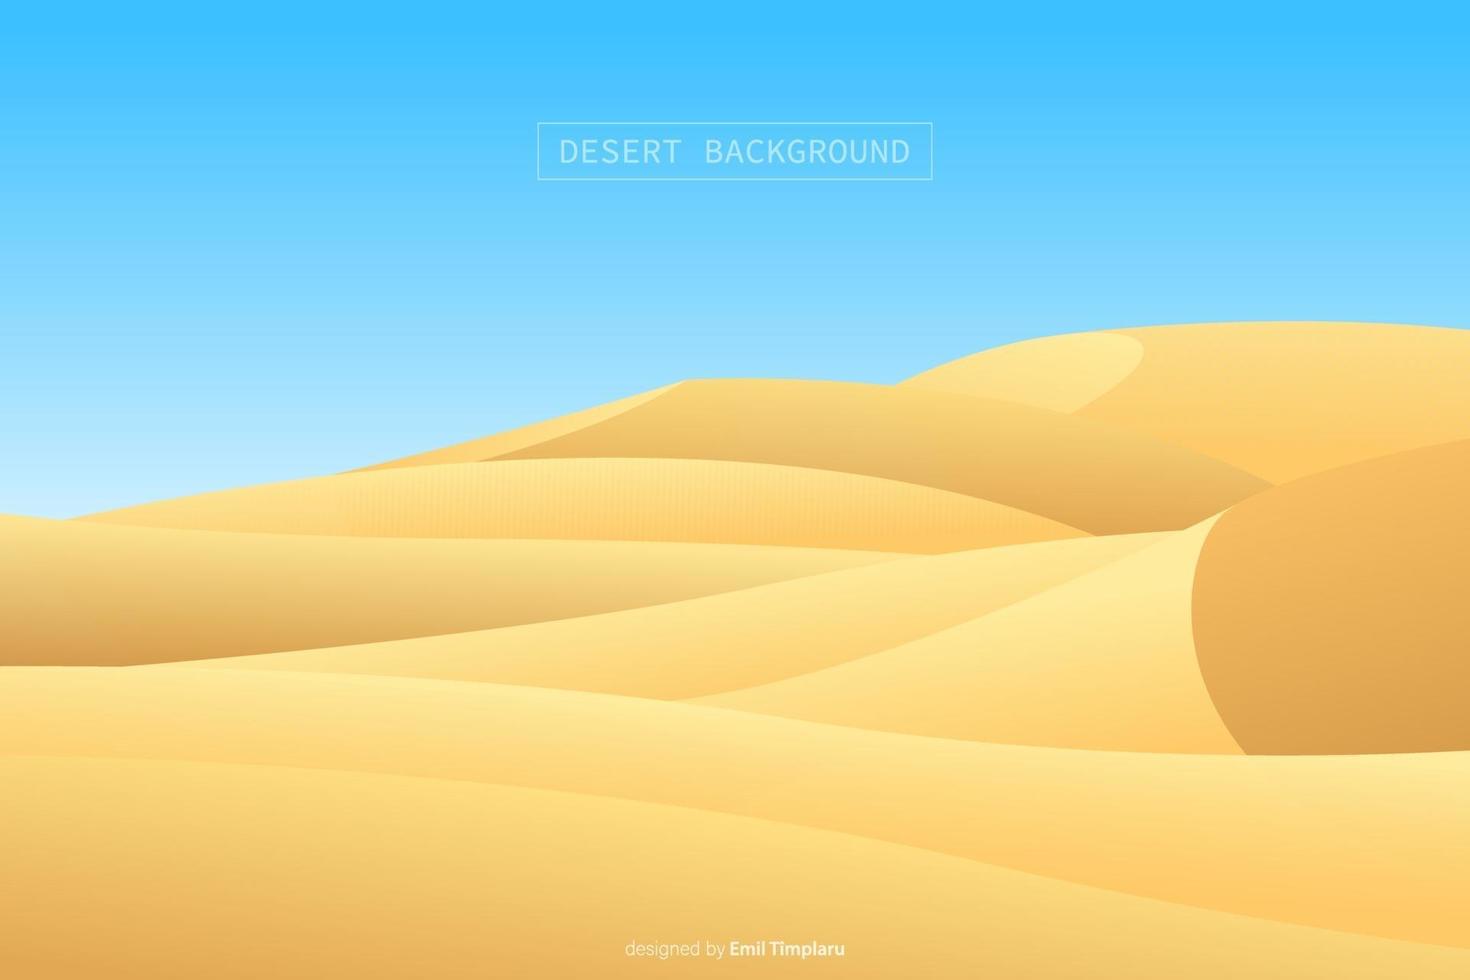 Desert landscape background vector design illustration